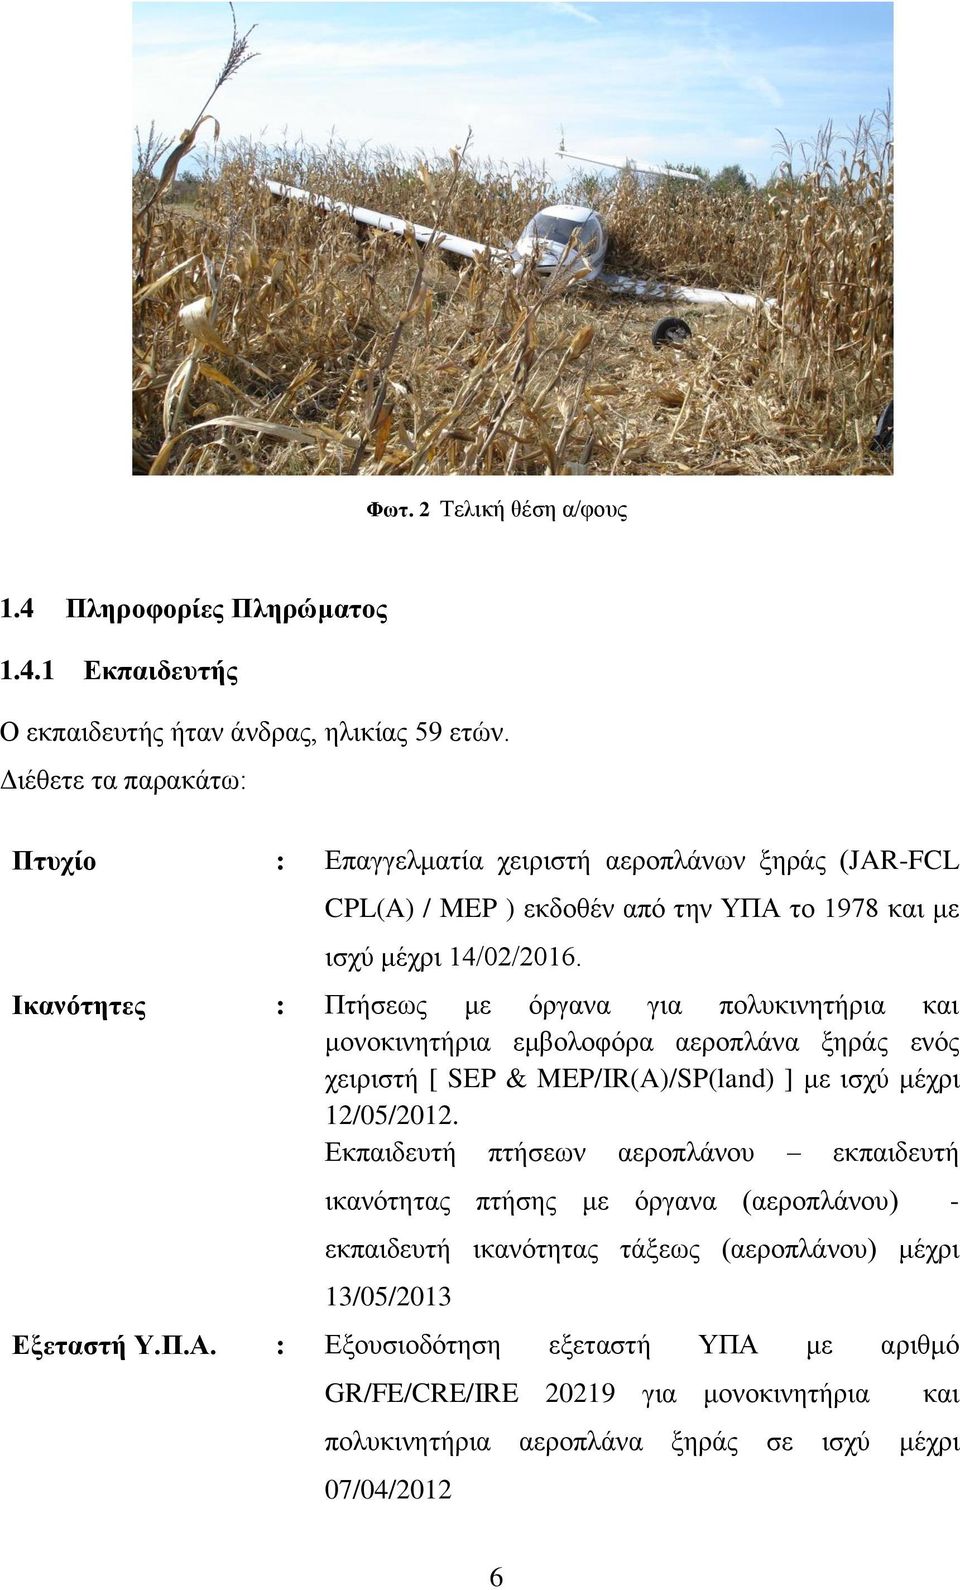 Ικανότητες : Πτήσεως με όργανα για πολυκινητήρια και μονοκινητήρια εμβολοφόρα αεροπλάνα ξηράς ενός χειριστή [ SEP & MEP/IR(A)/SP(land) ] με ισχύ μέχρι 12/05/2012.